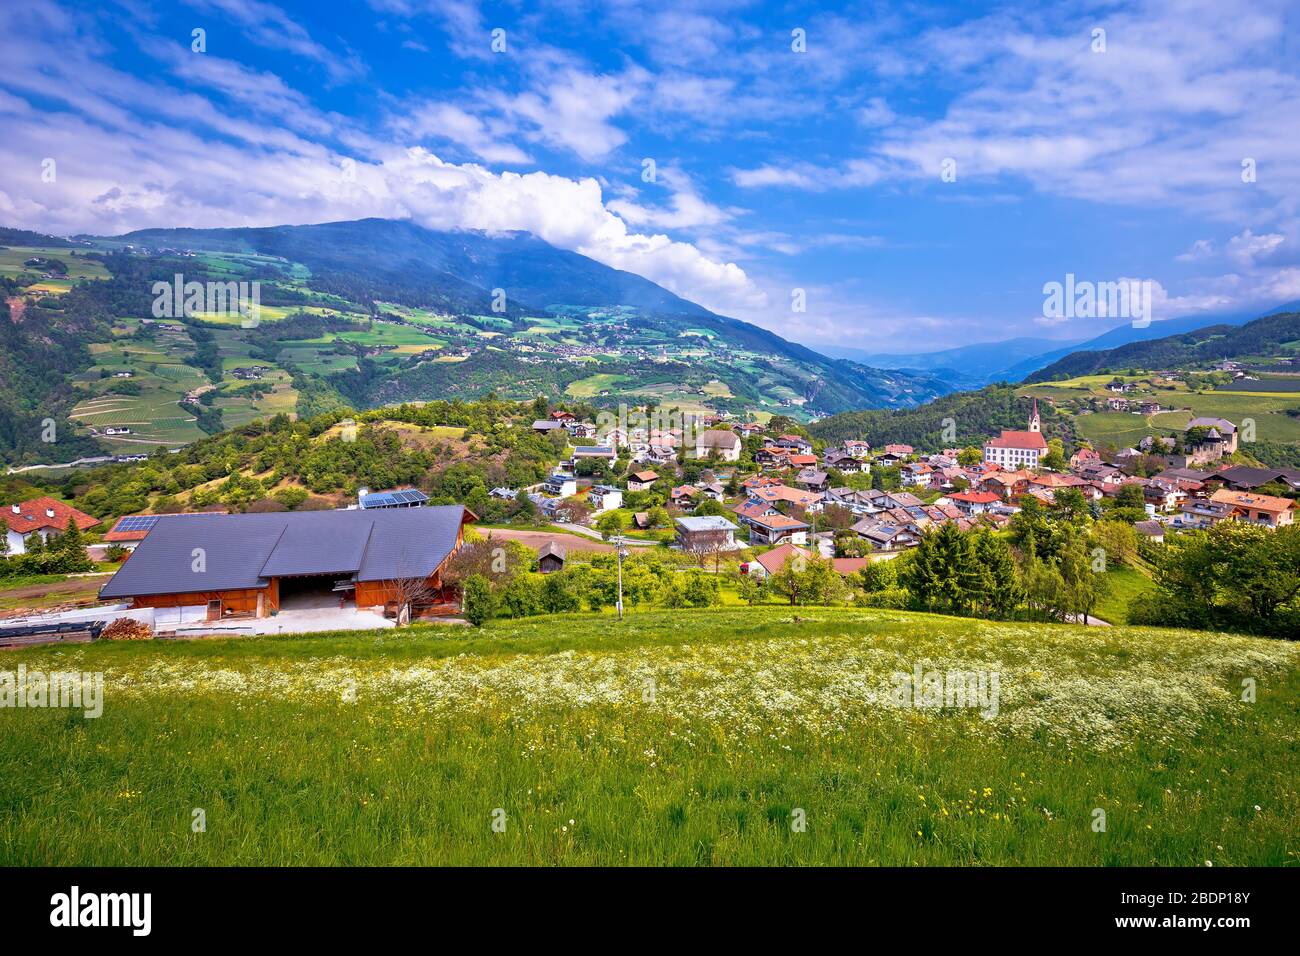 In Den Bergen. Idyllisches Alpendorf Gudon Architektur und Landschaftsblick, Provinz Bolzano im Trentino Alto Adige in Italien Stockfoto